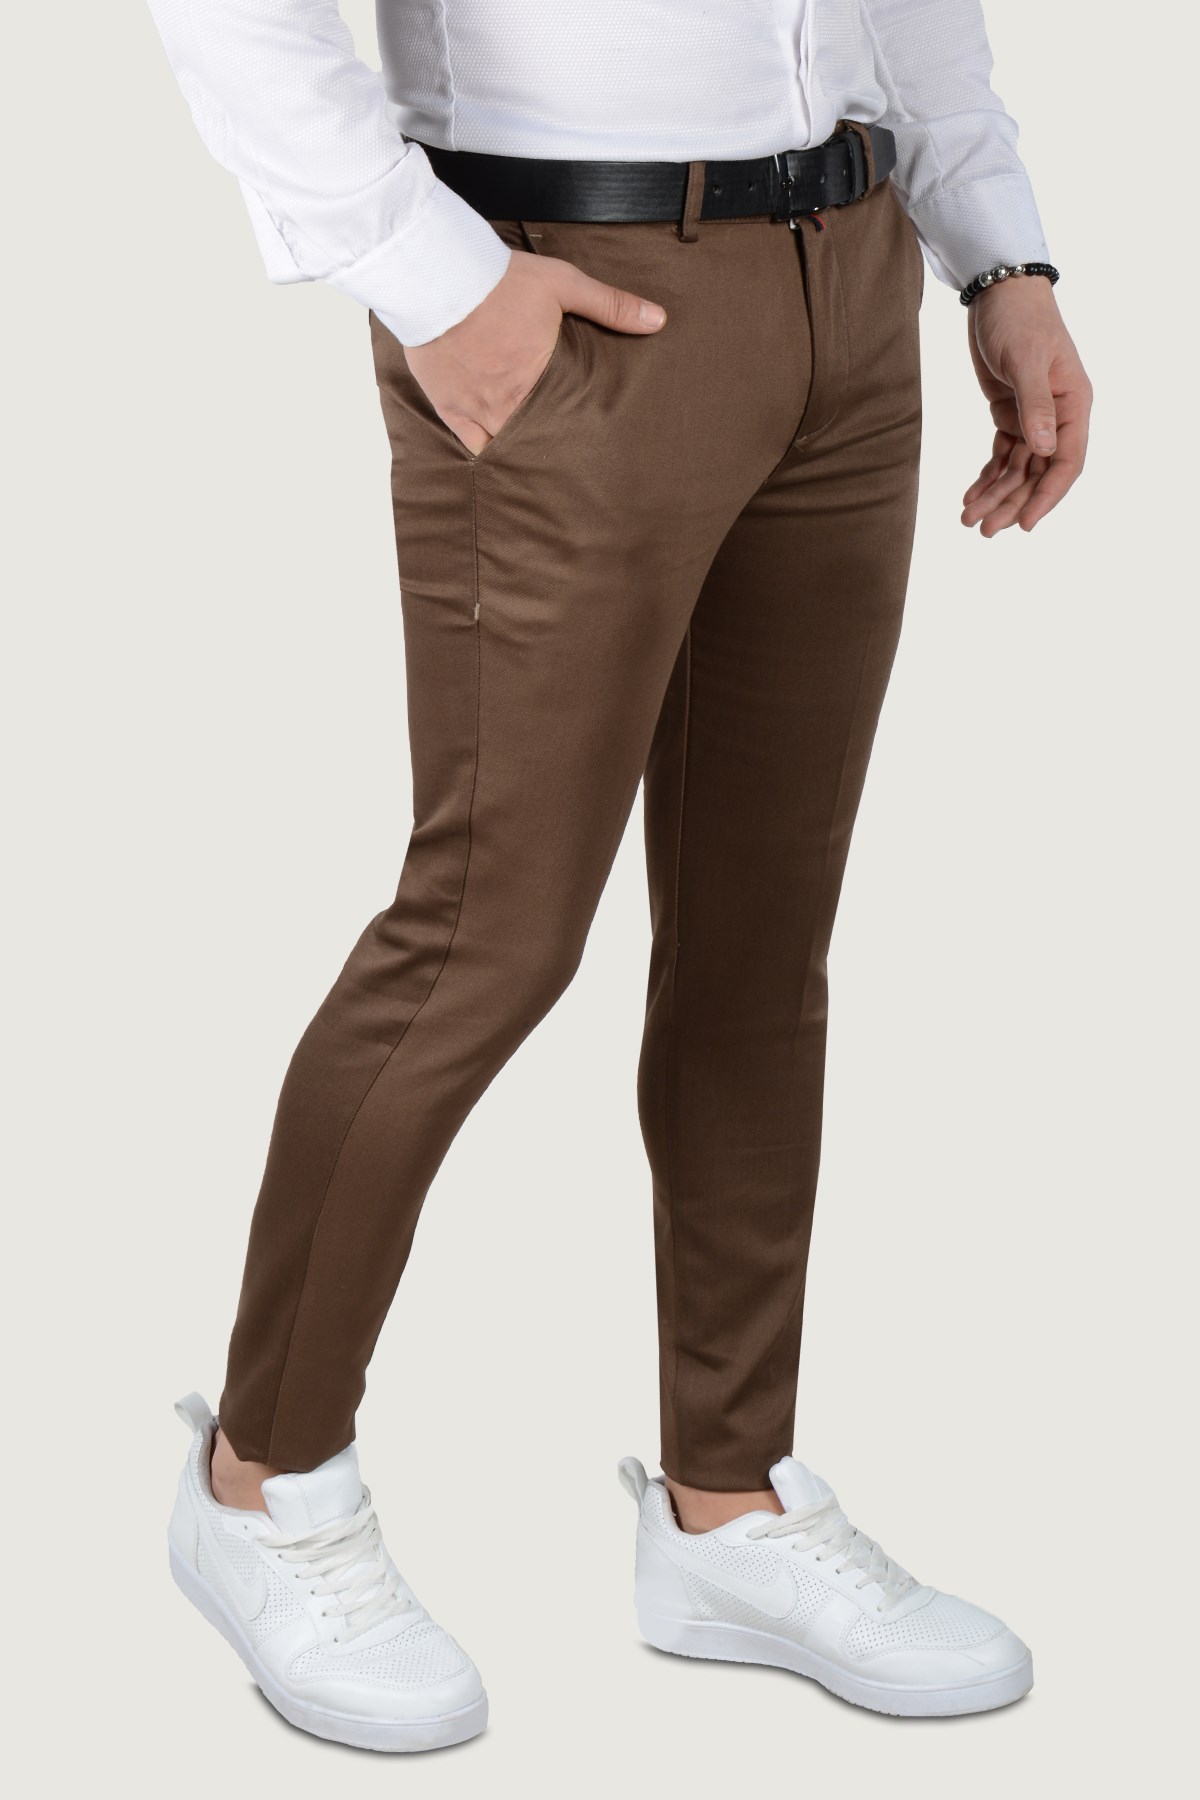 Erkek Keten Pantolon 9Y-2200203-100 Koyu Kahverengi | Terapi Giyim